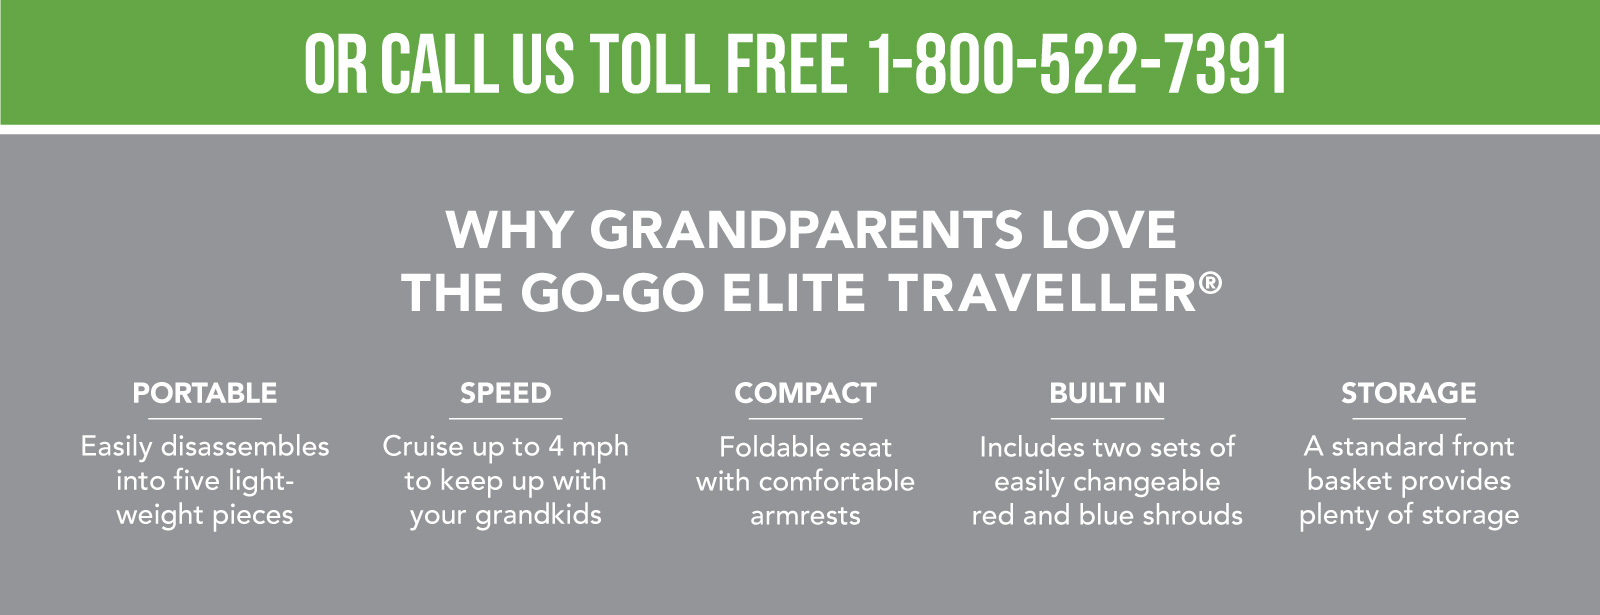 Why Grandparent's Love the Go-Go Elite Traveller